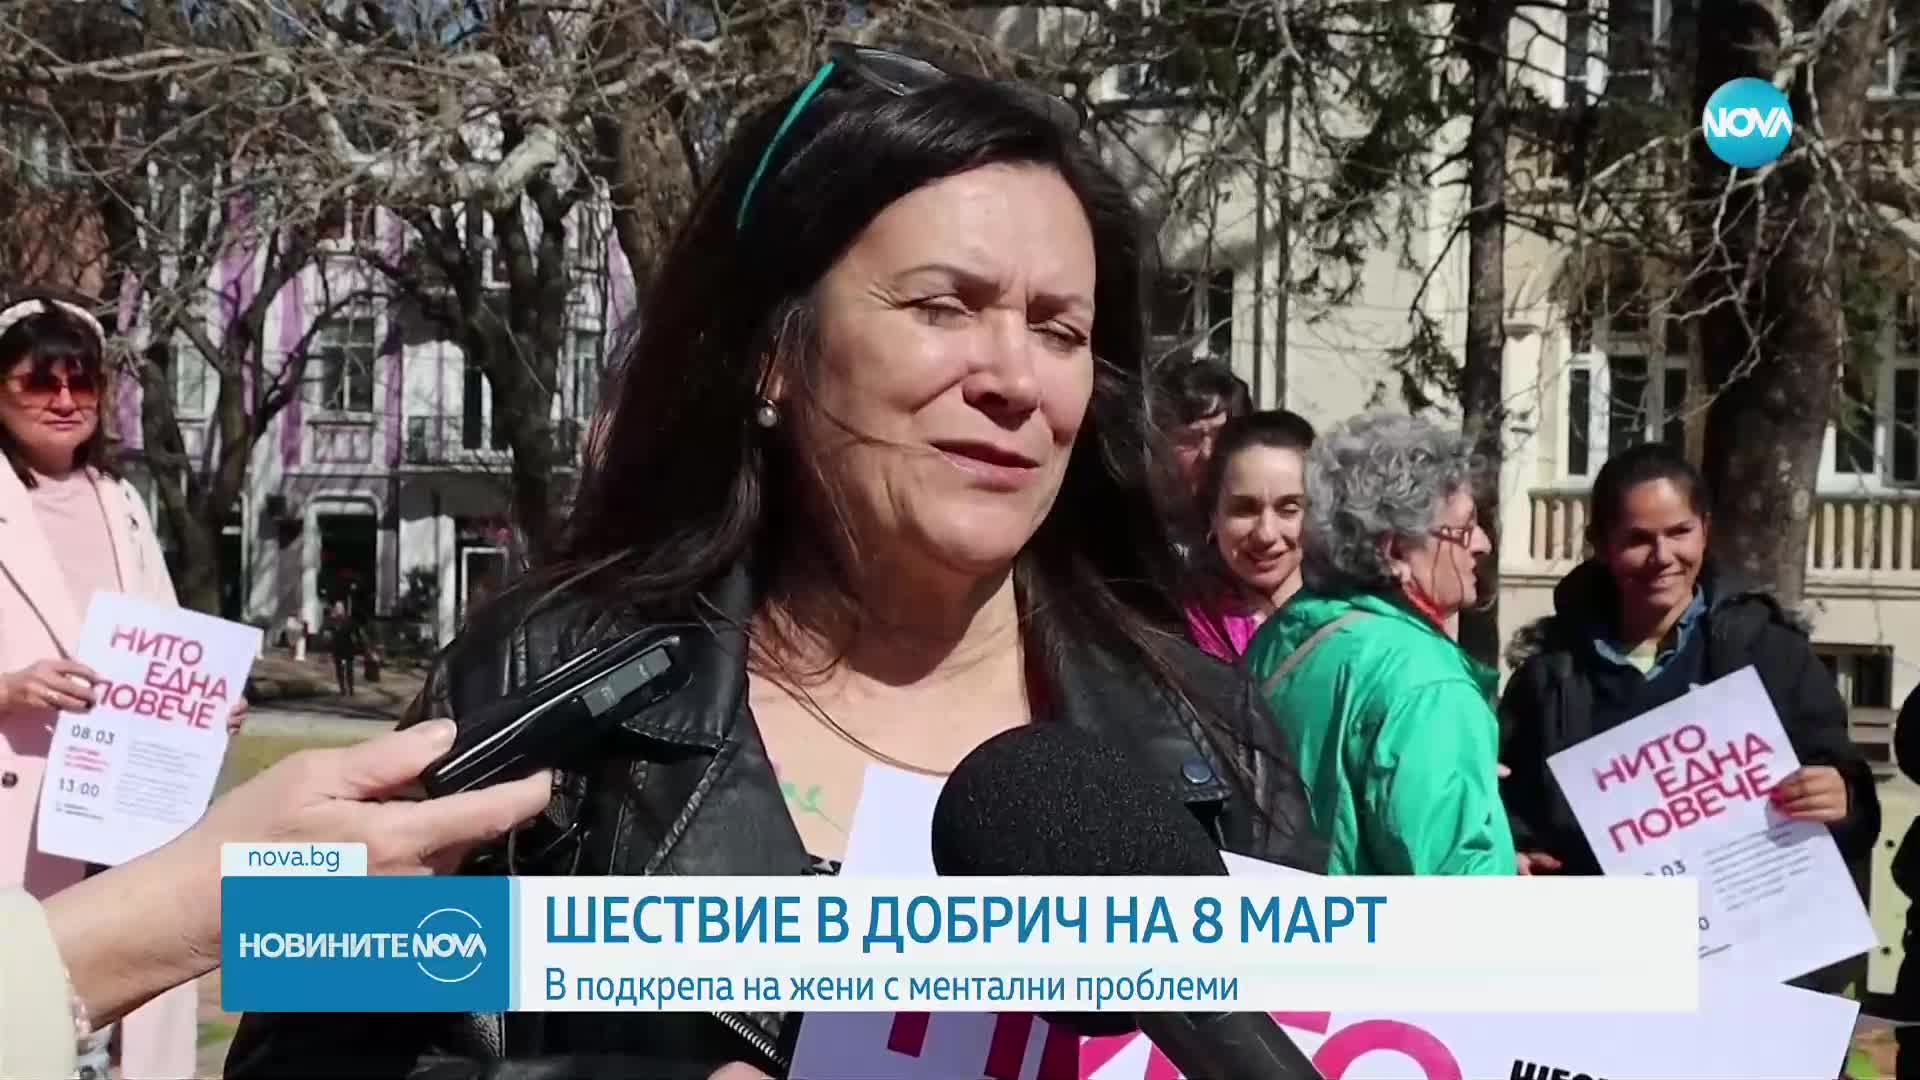 НА 8 МАРТ: Шествие в подкрепа на жени с ментални проблеми в Добрич